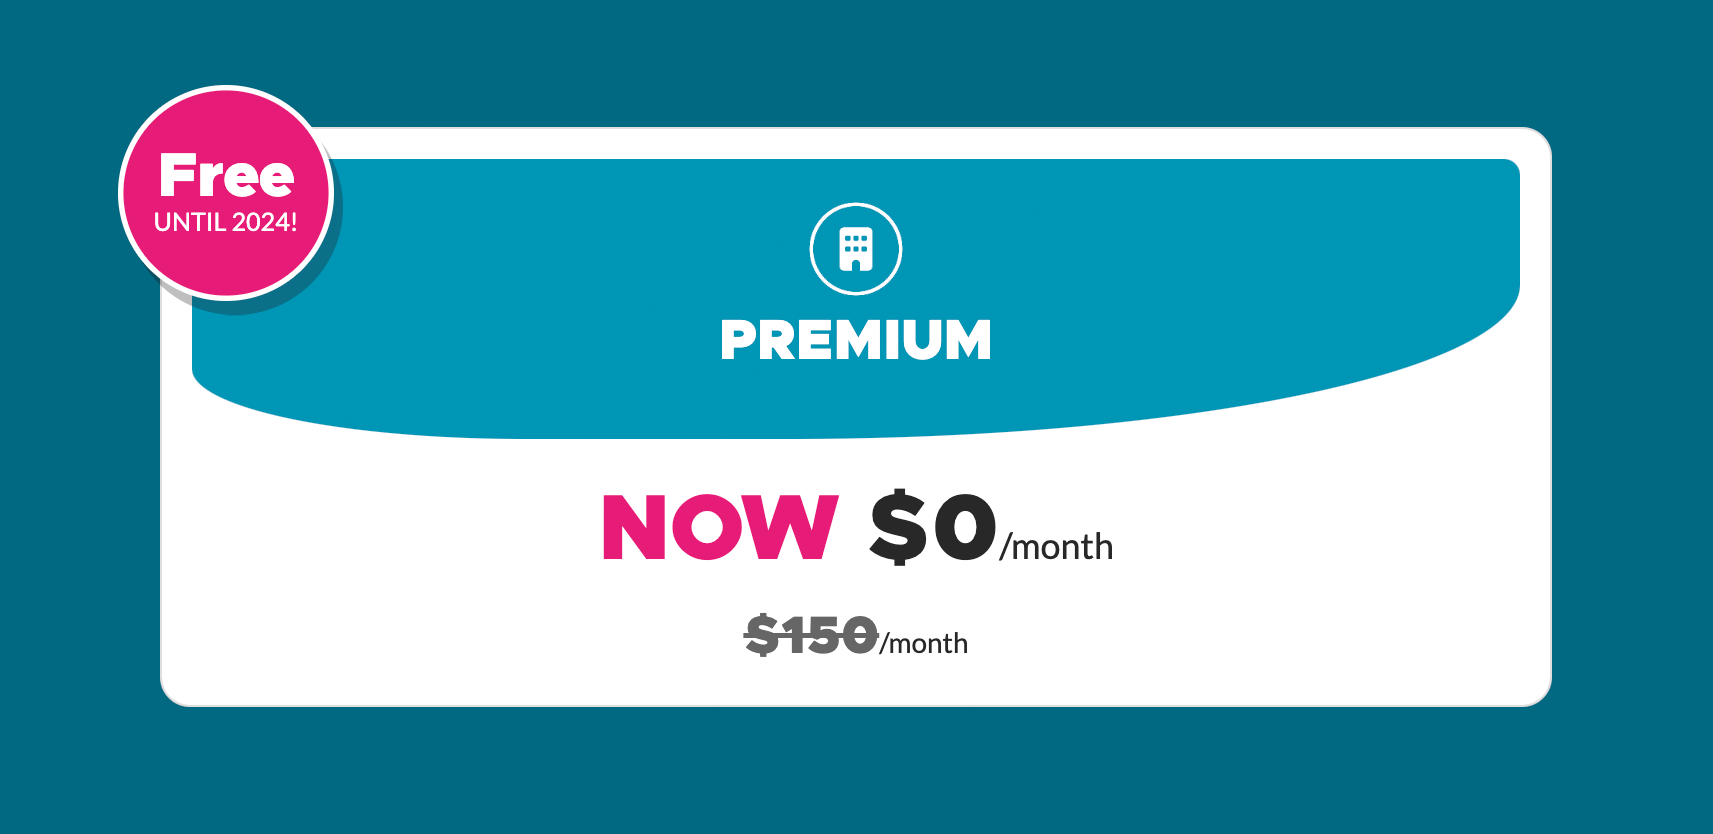 Practice Promo: Free Premium!